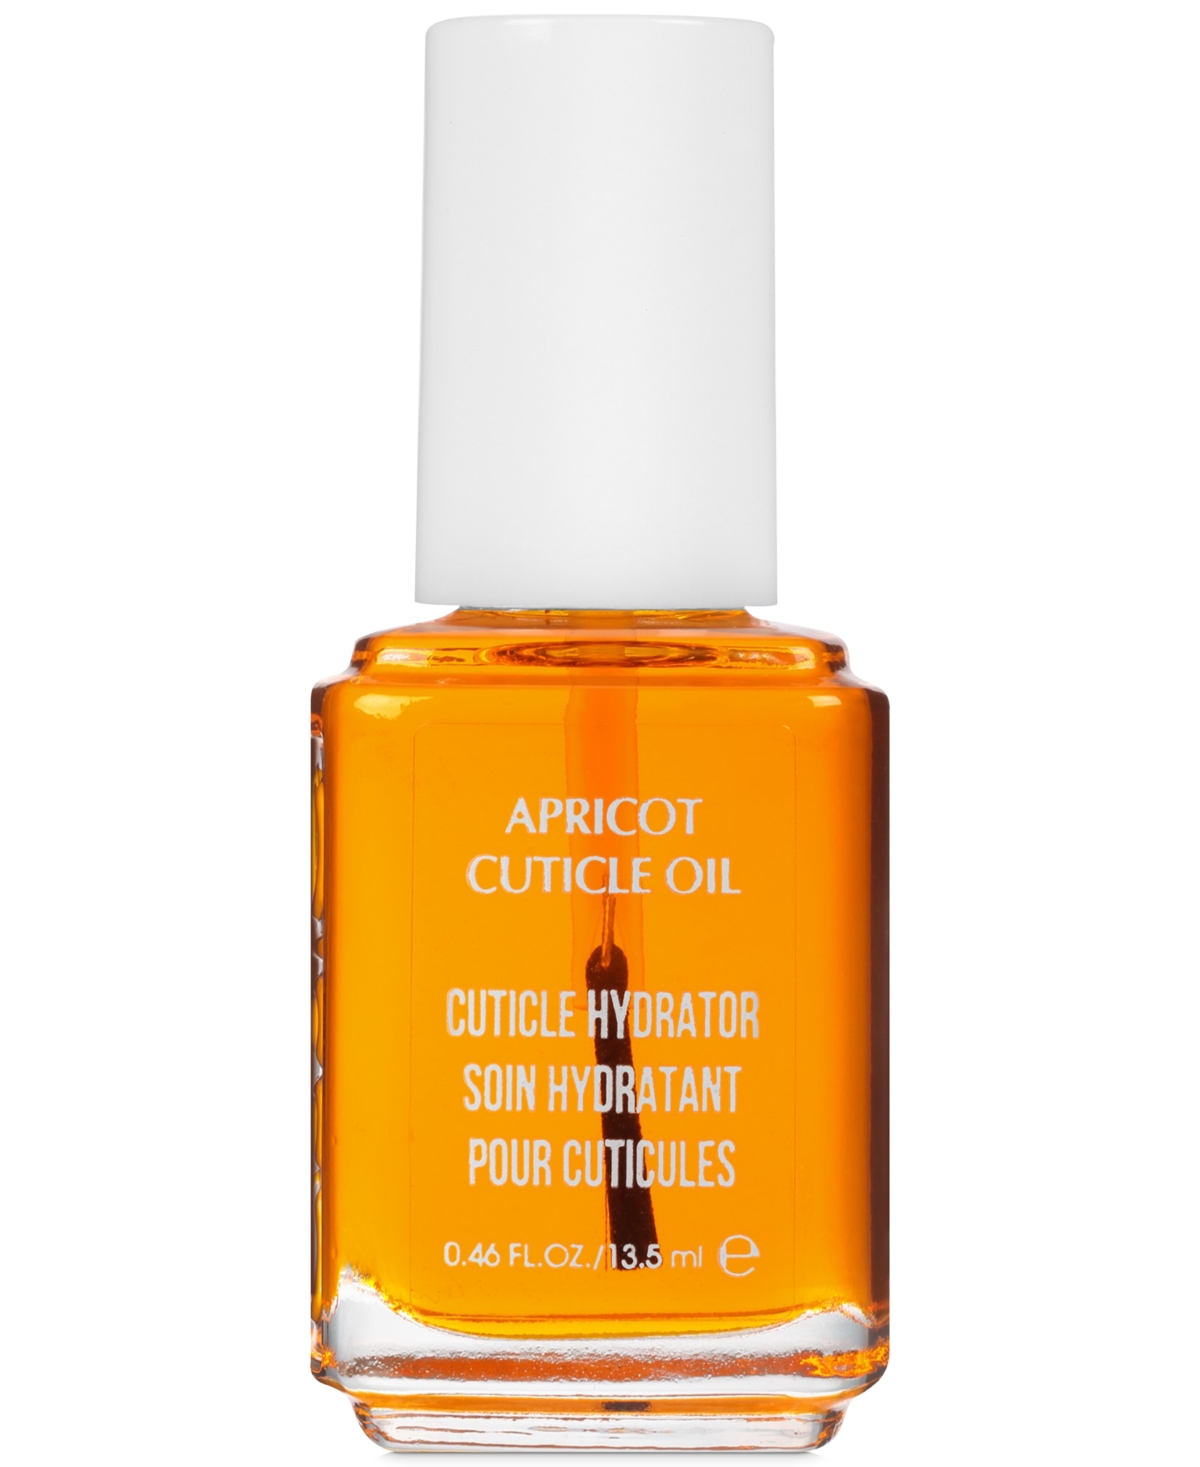 Apricot Cuticle Oil - Apricot Cuticle Oil